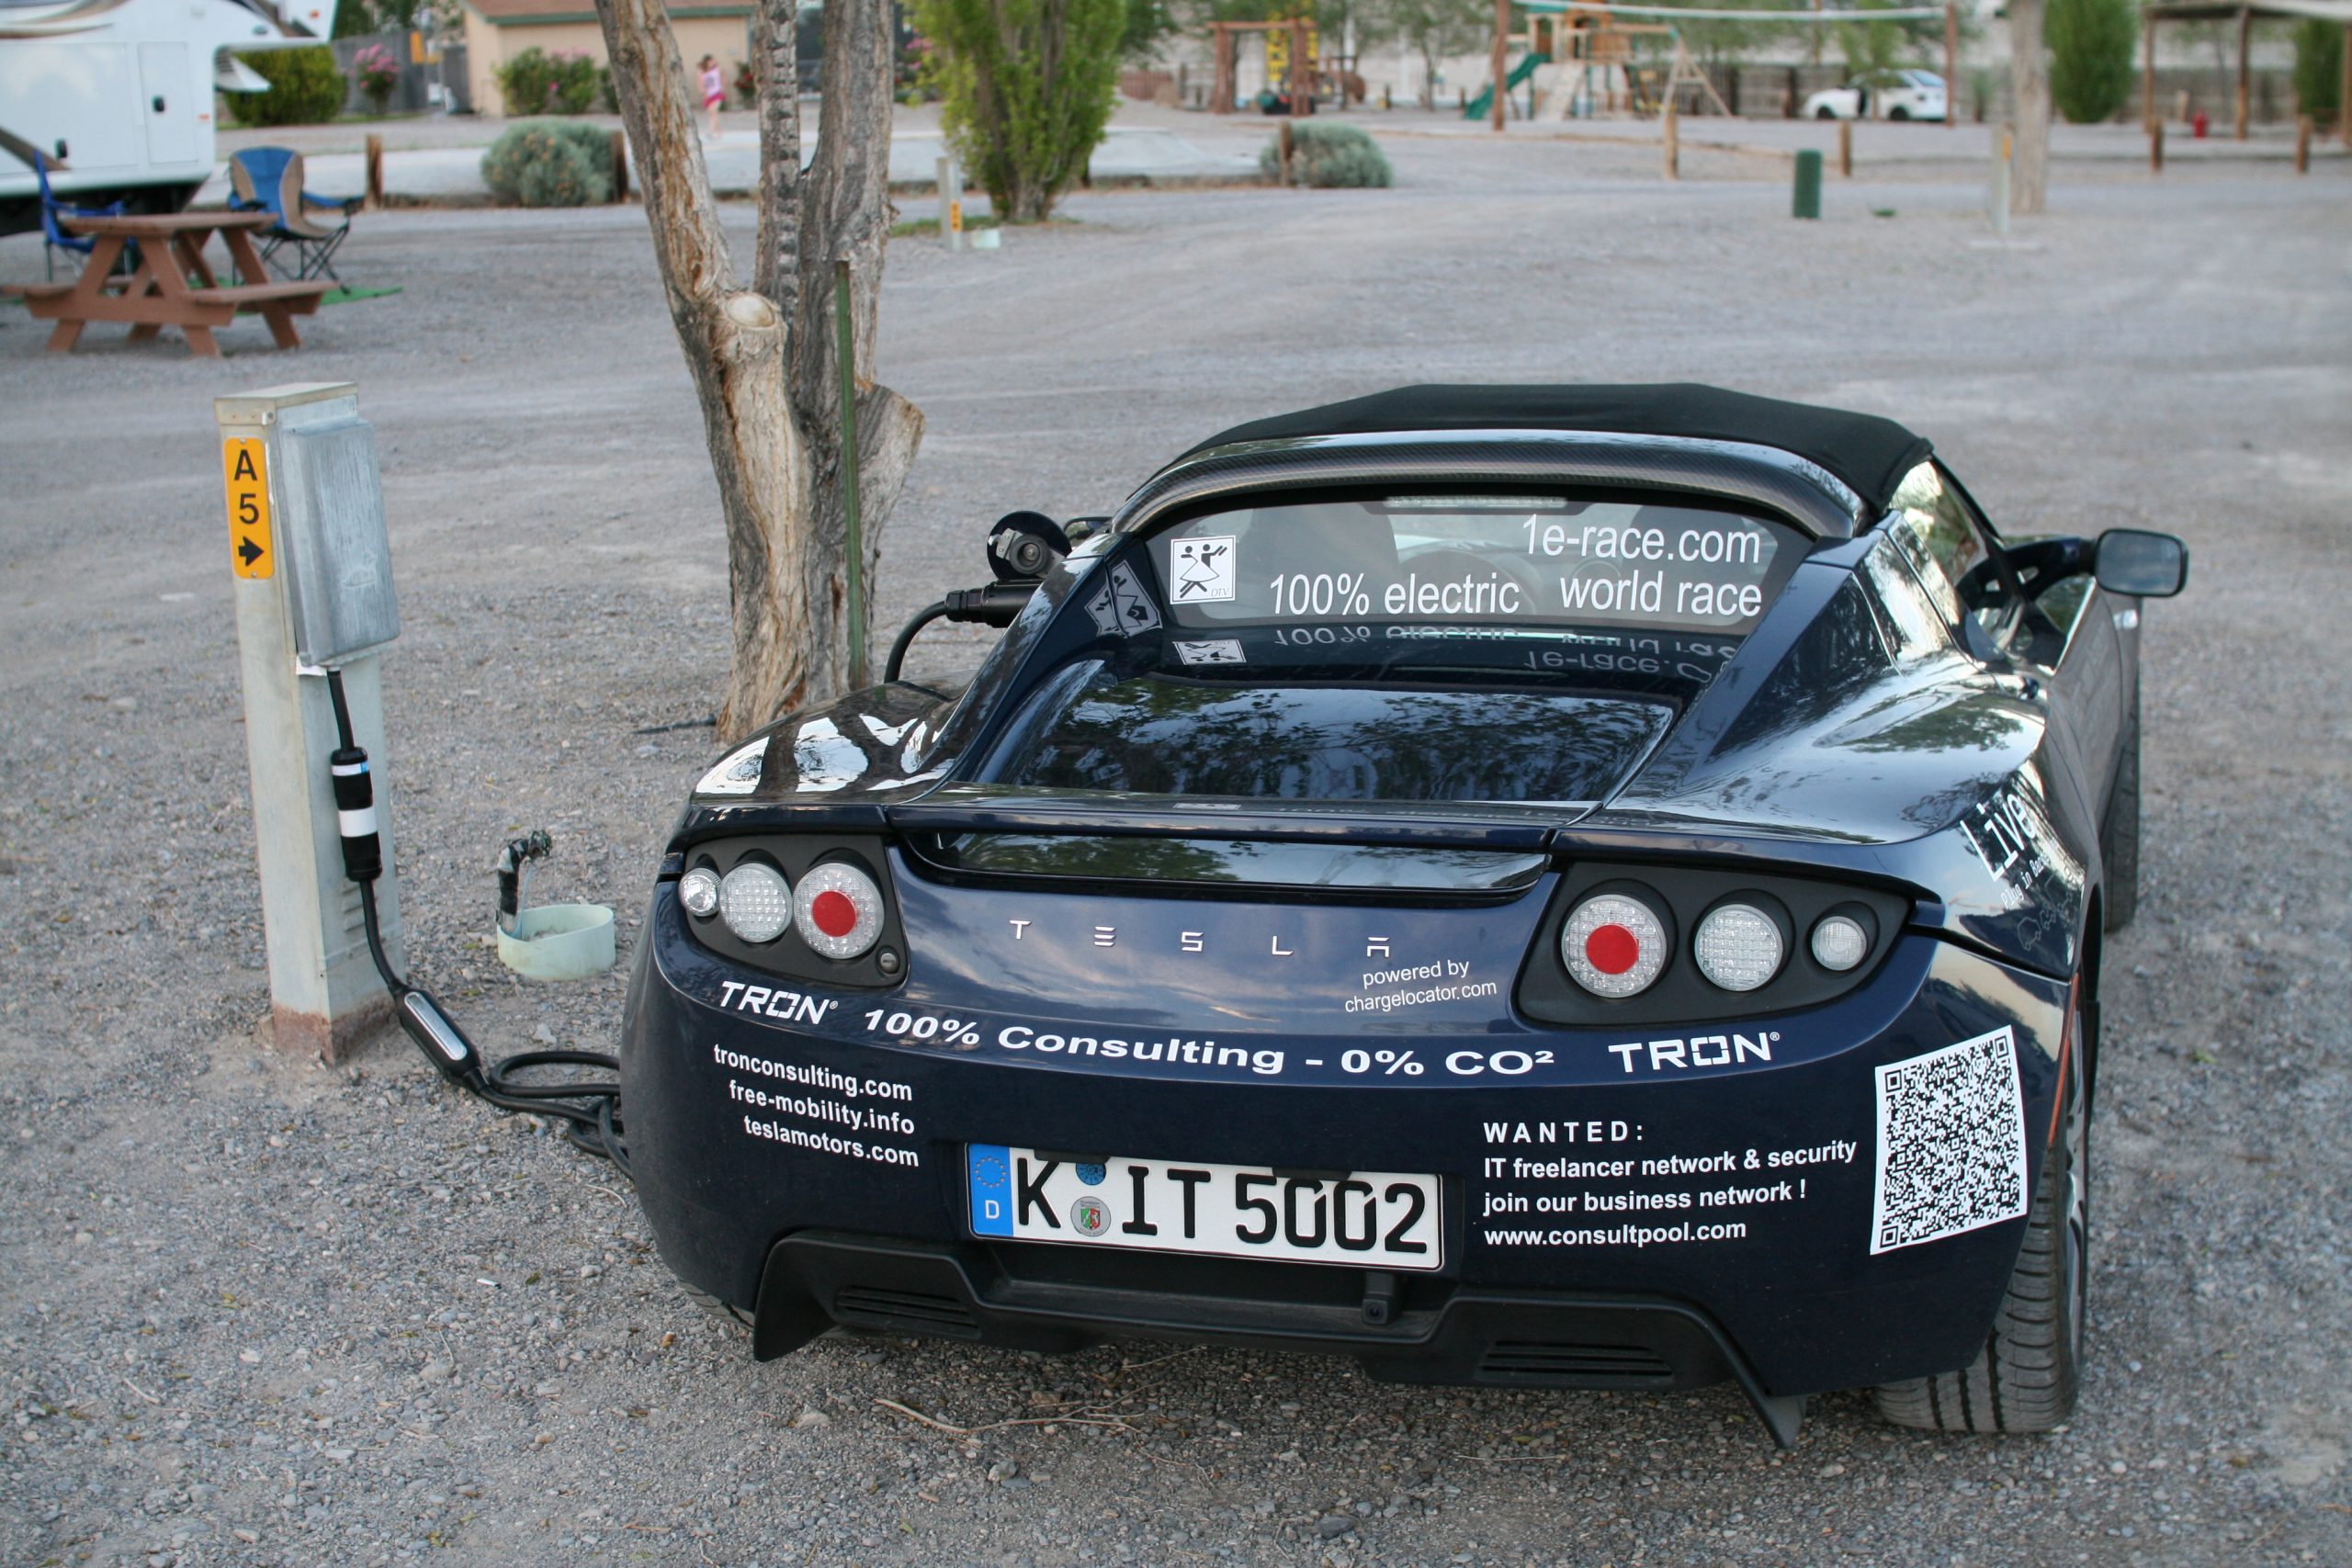 Испанский путешественник Рафаэль Де Местре &#8211; кругосветка  на электромобиле через Казахстан